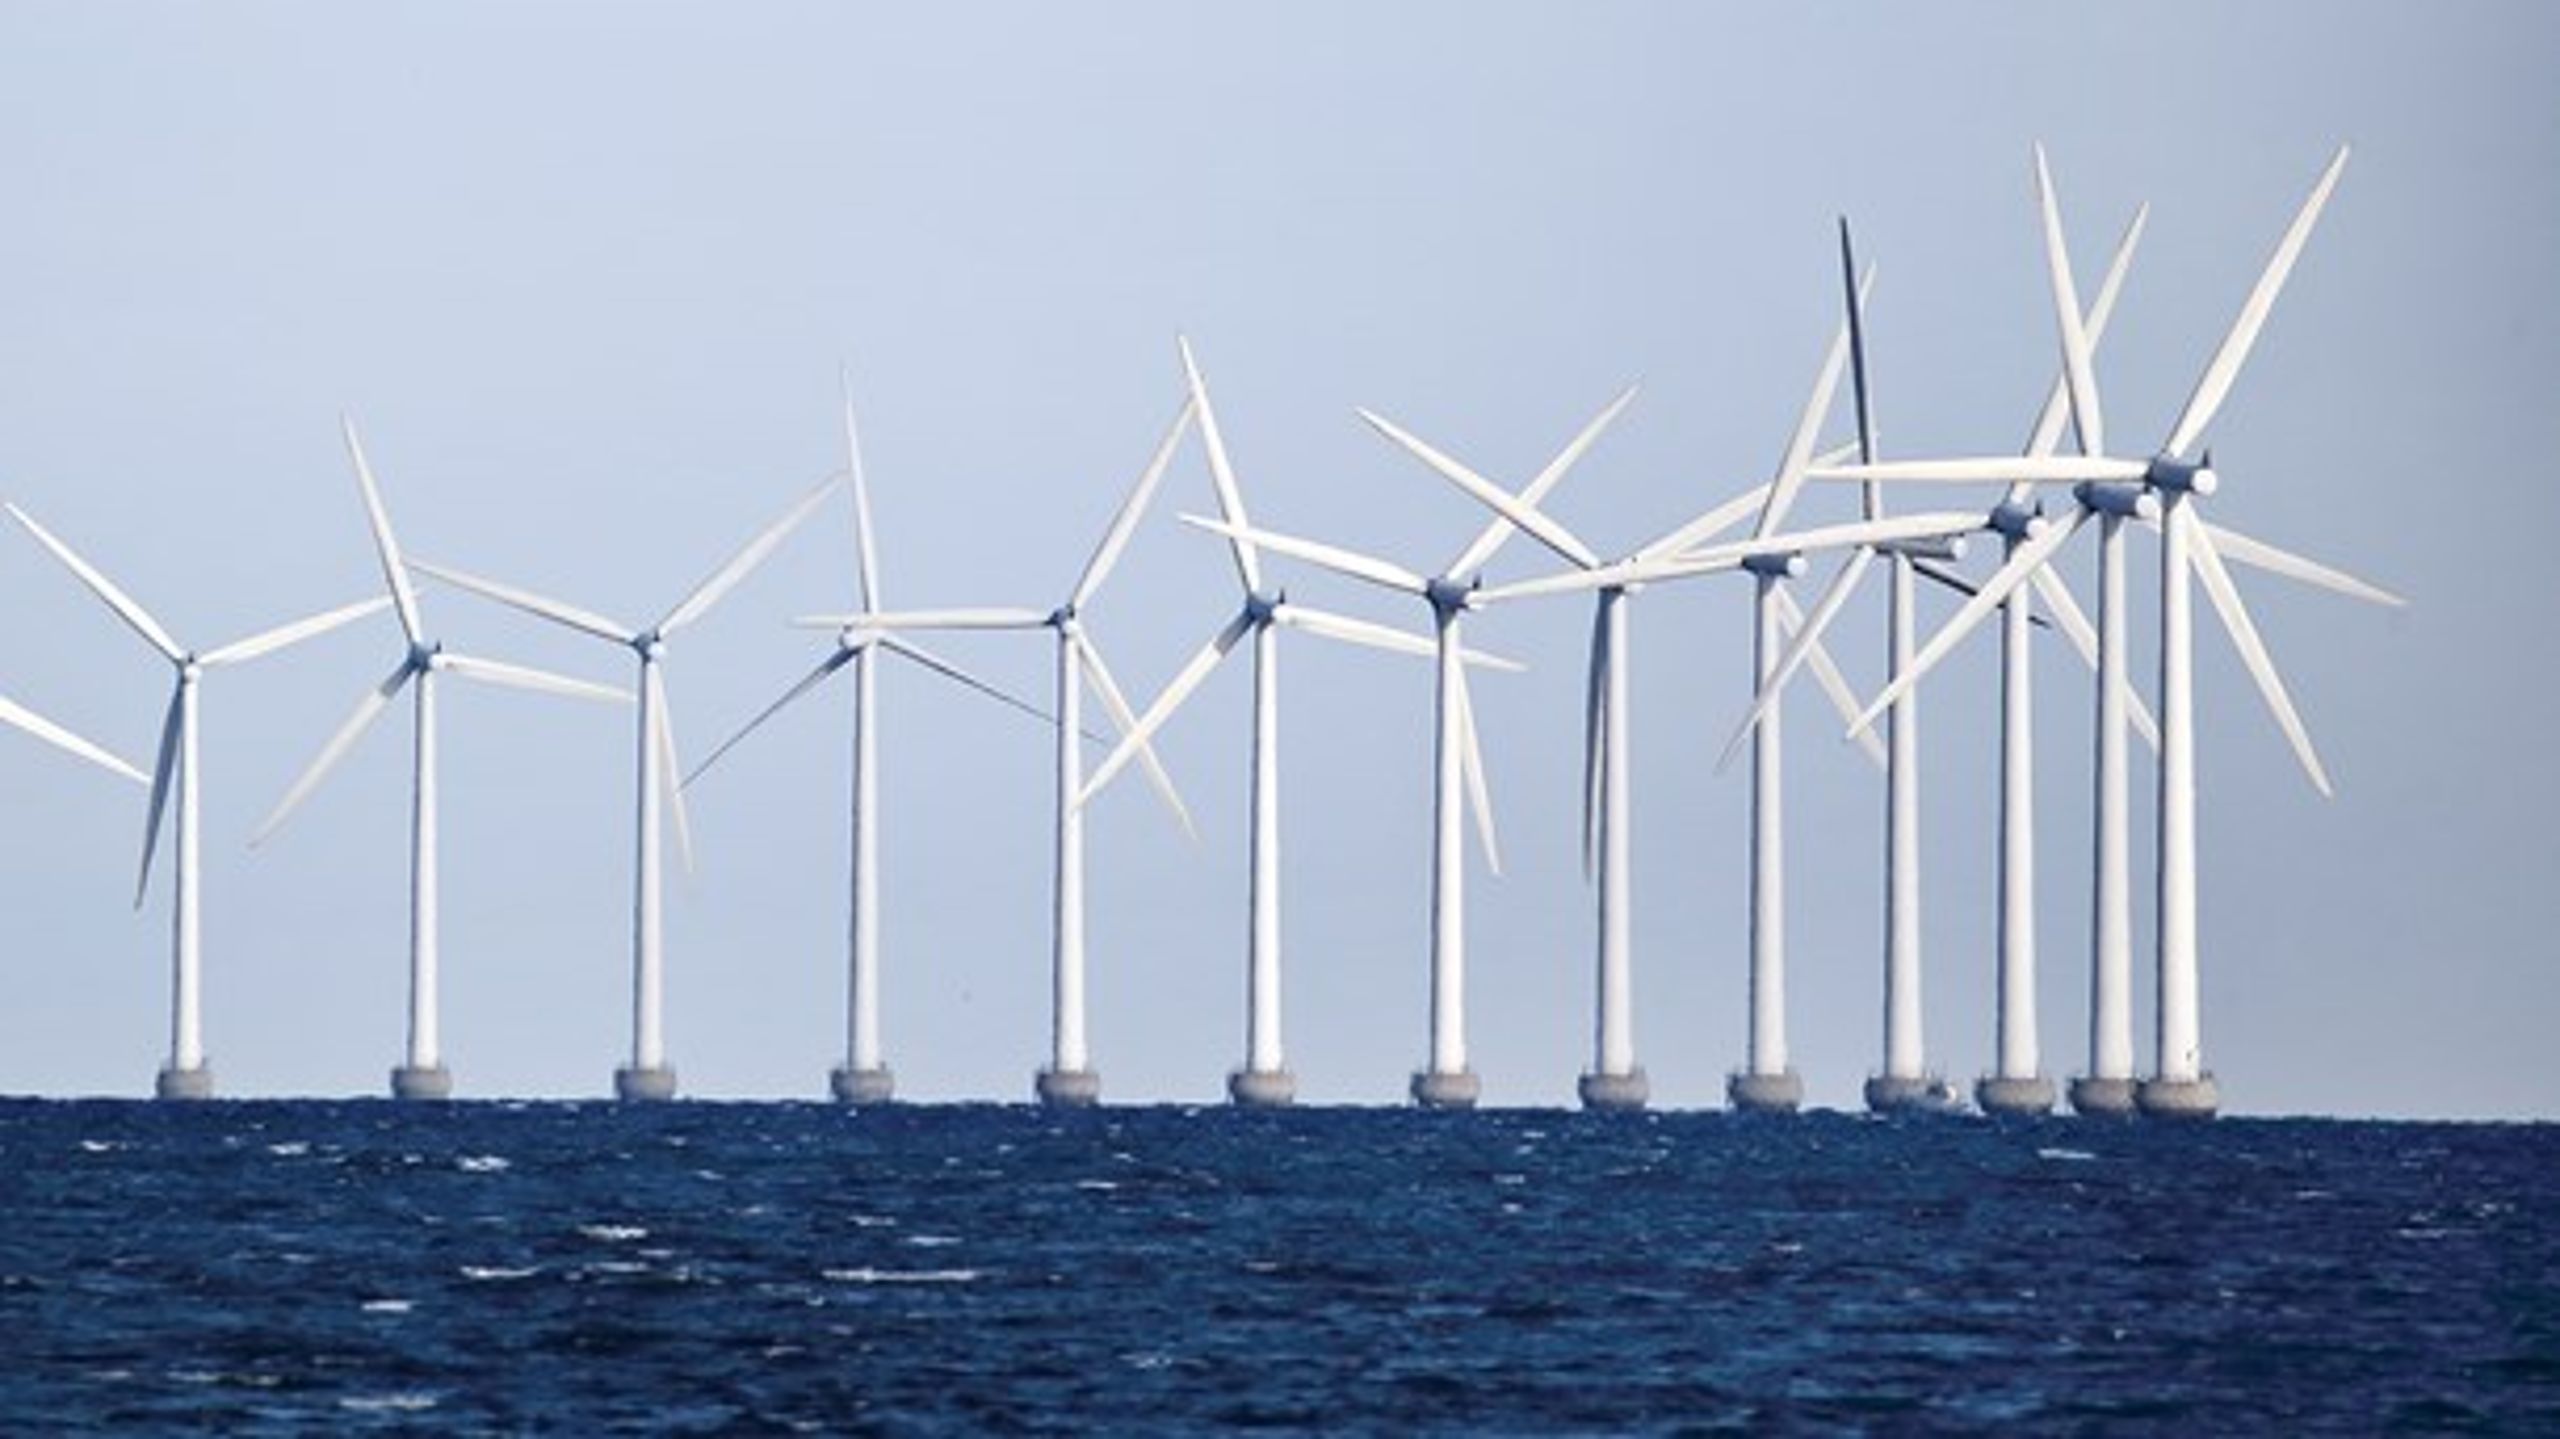 Det er selvindlysende, at Danmark bør stå sammen med gruppen af lande, der vil hæve&nbsp;EU's ambitionsniveau for vedvarende energi, da det&nbsp;fremmer Danmarks interesser, klimaet og dansk erhvervsliv, skriver Camilla Holbech.